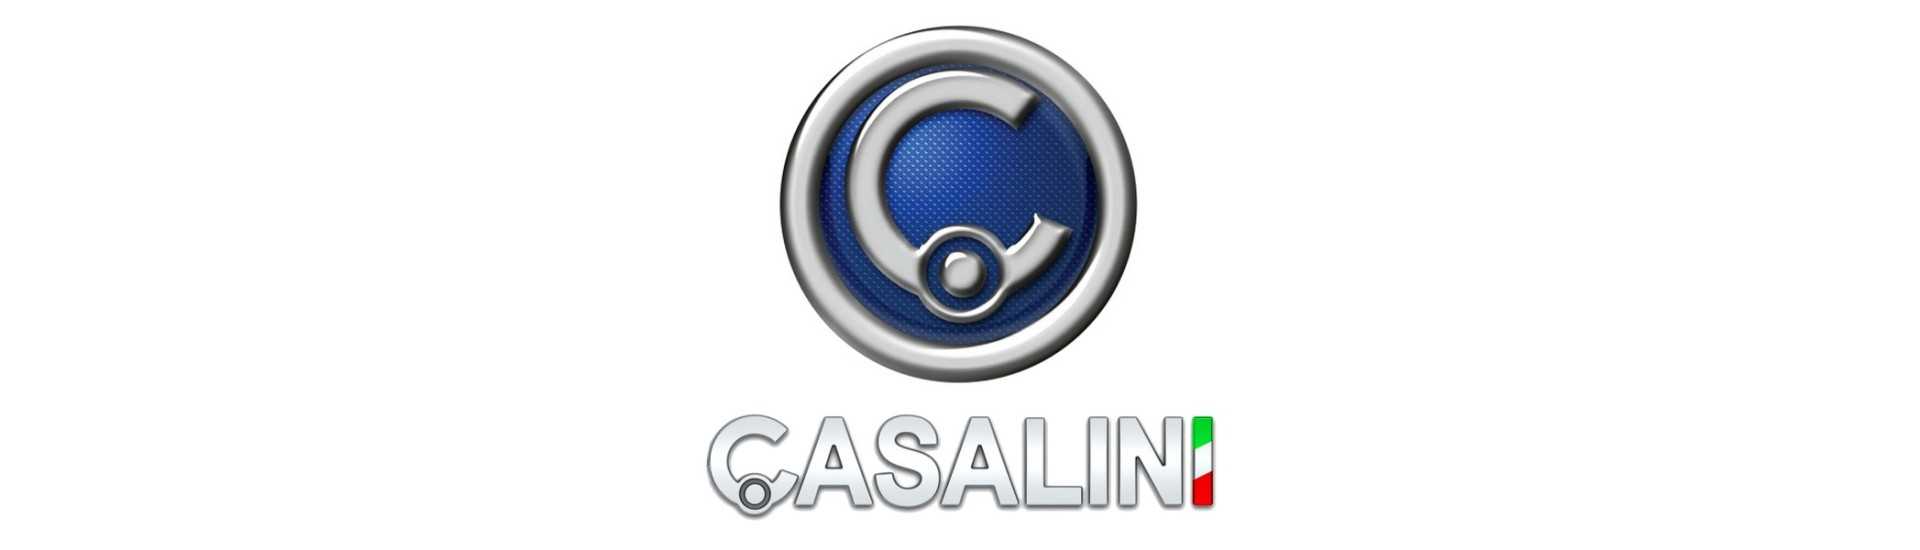 Höchstpreis für Auto ohne Lizenz Casalini